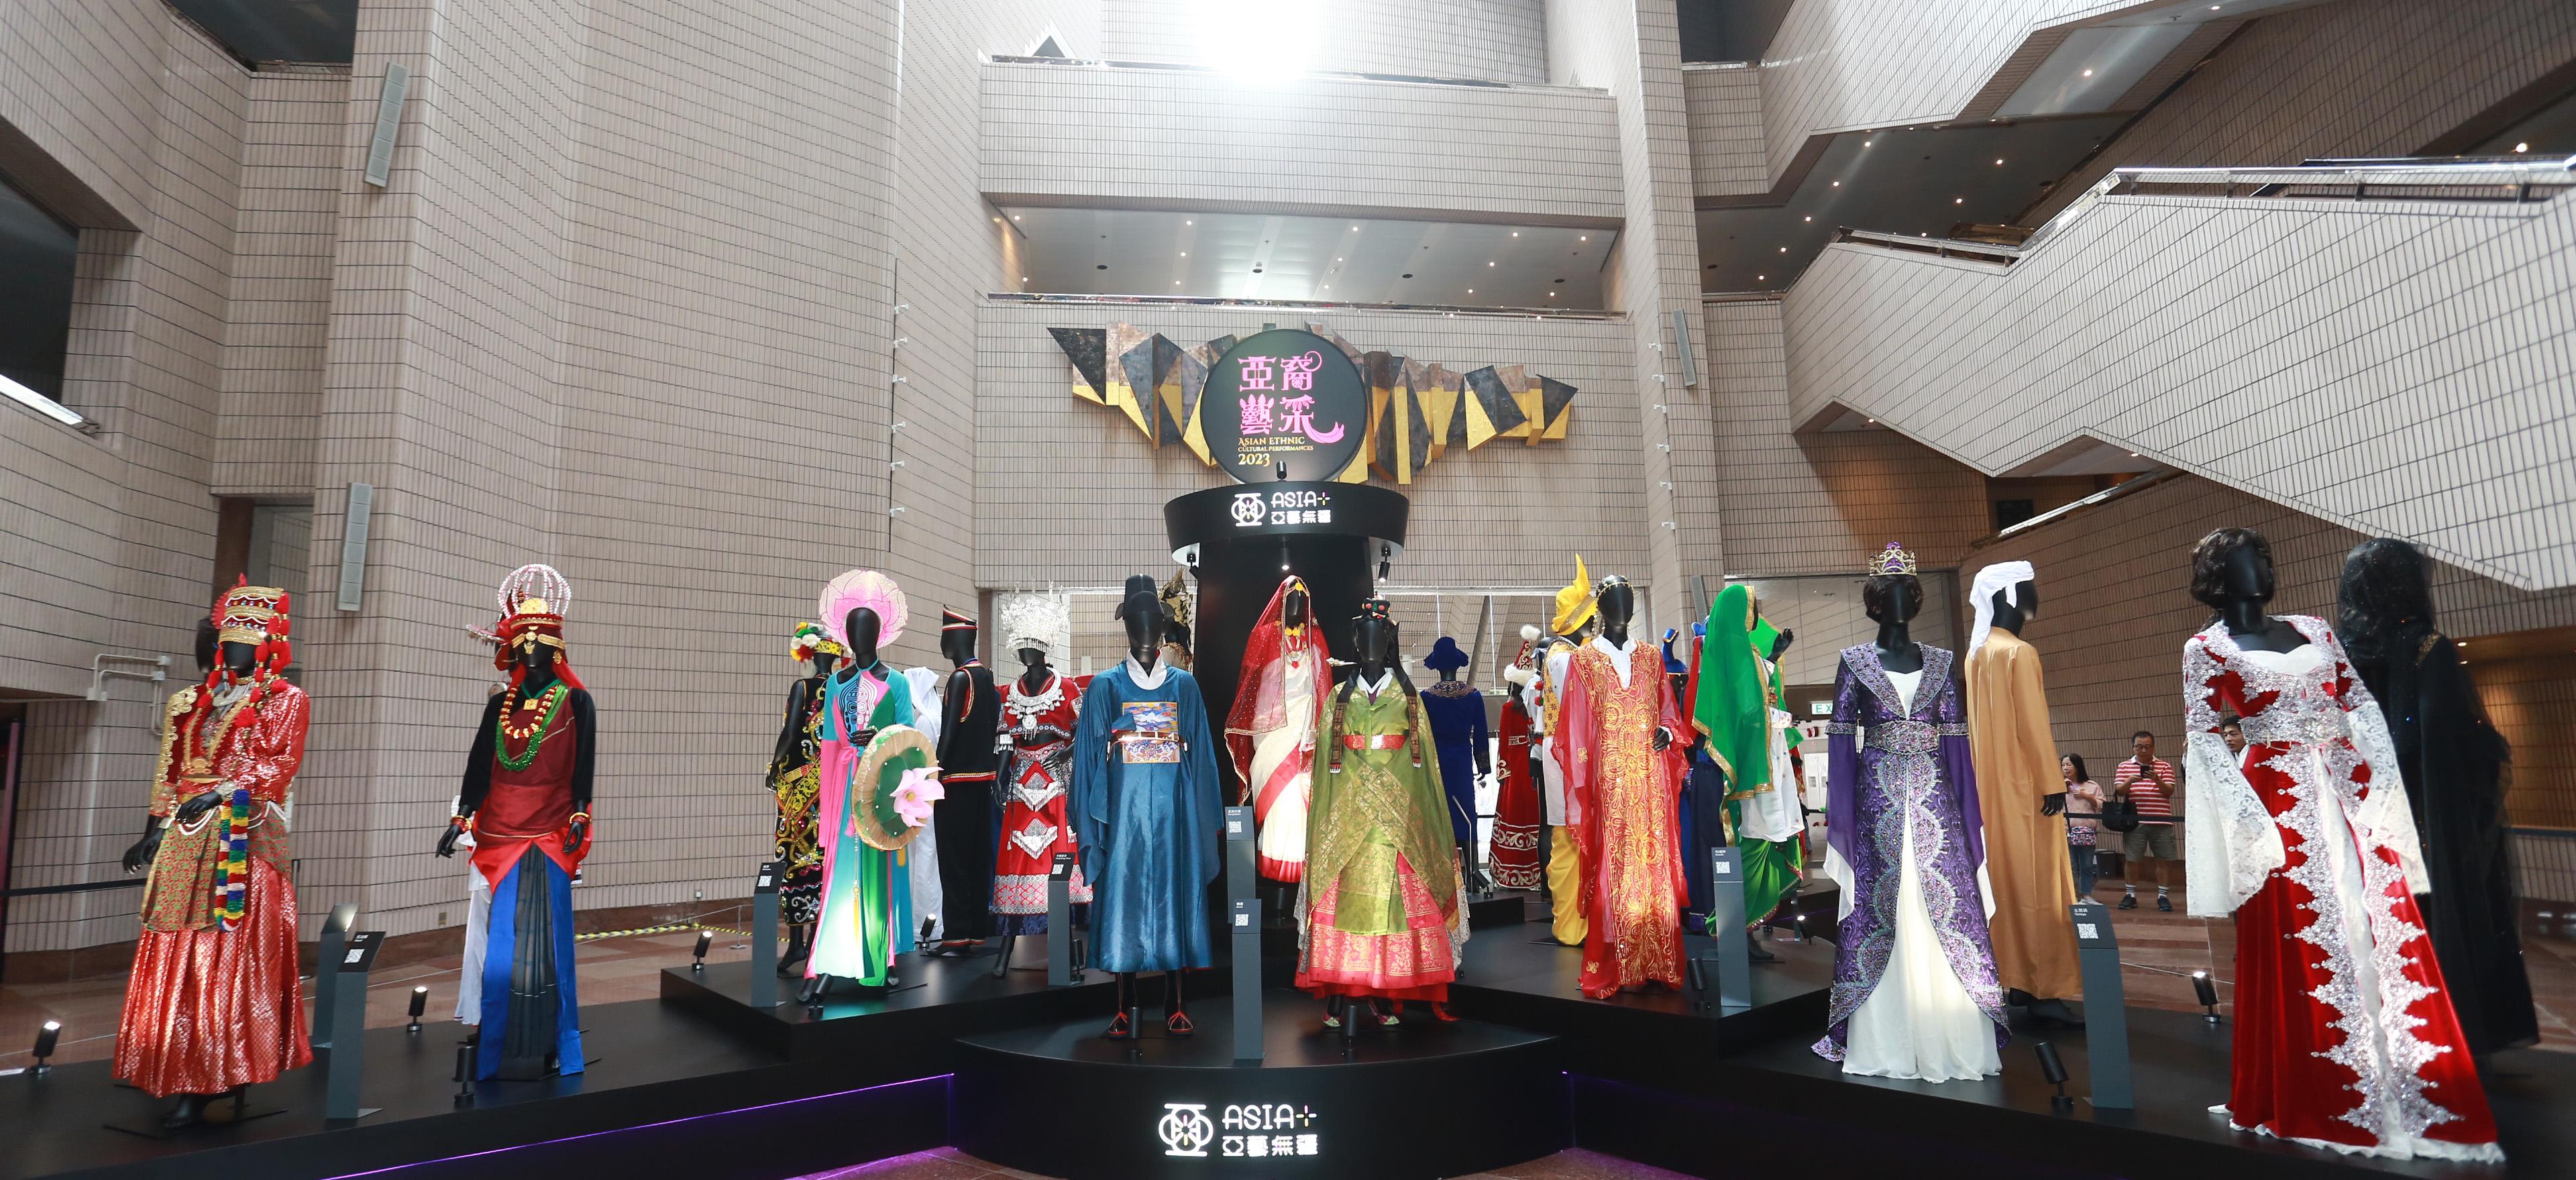 康乐及文化事务署今日（十一月十二日）下午在香港文化中心露天广场举行「亚裔艺采」，其中的「花冕霓裳—民族服装头饰展」在香港文化中心大堂举行至十一月十九日，展示亚洲各地人民在节庆活动、歌舞表演等场合穿着的服装和头饰，缤纷多彩。